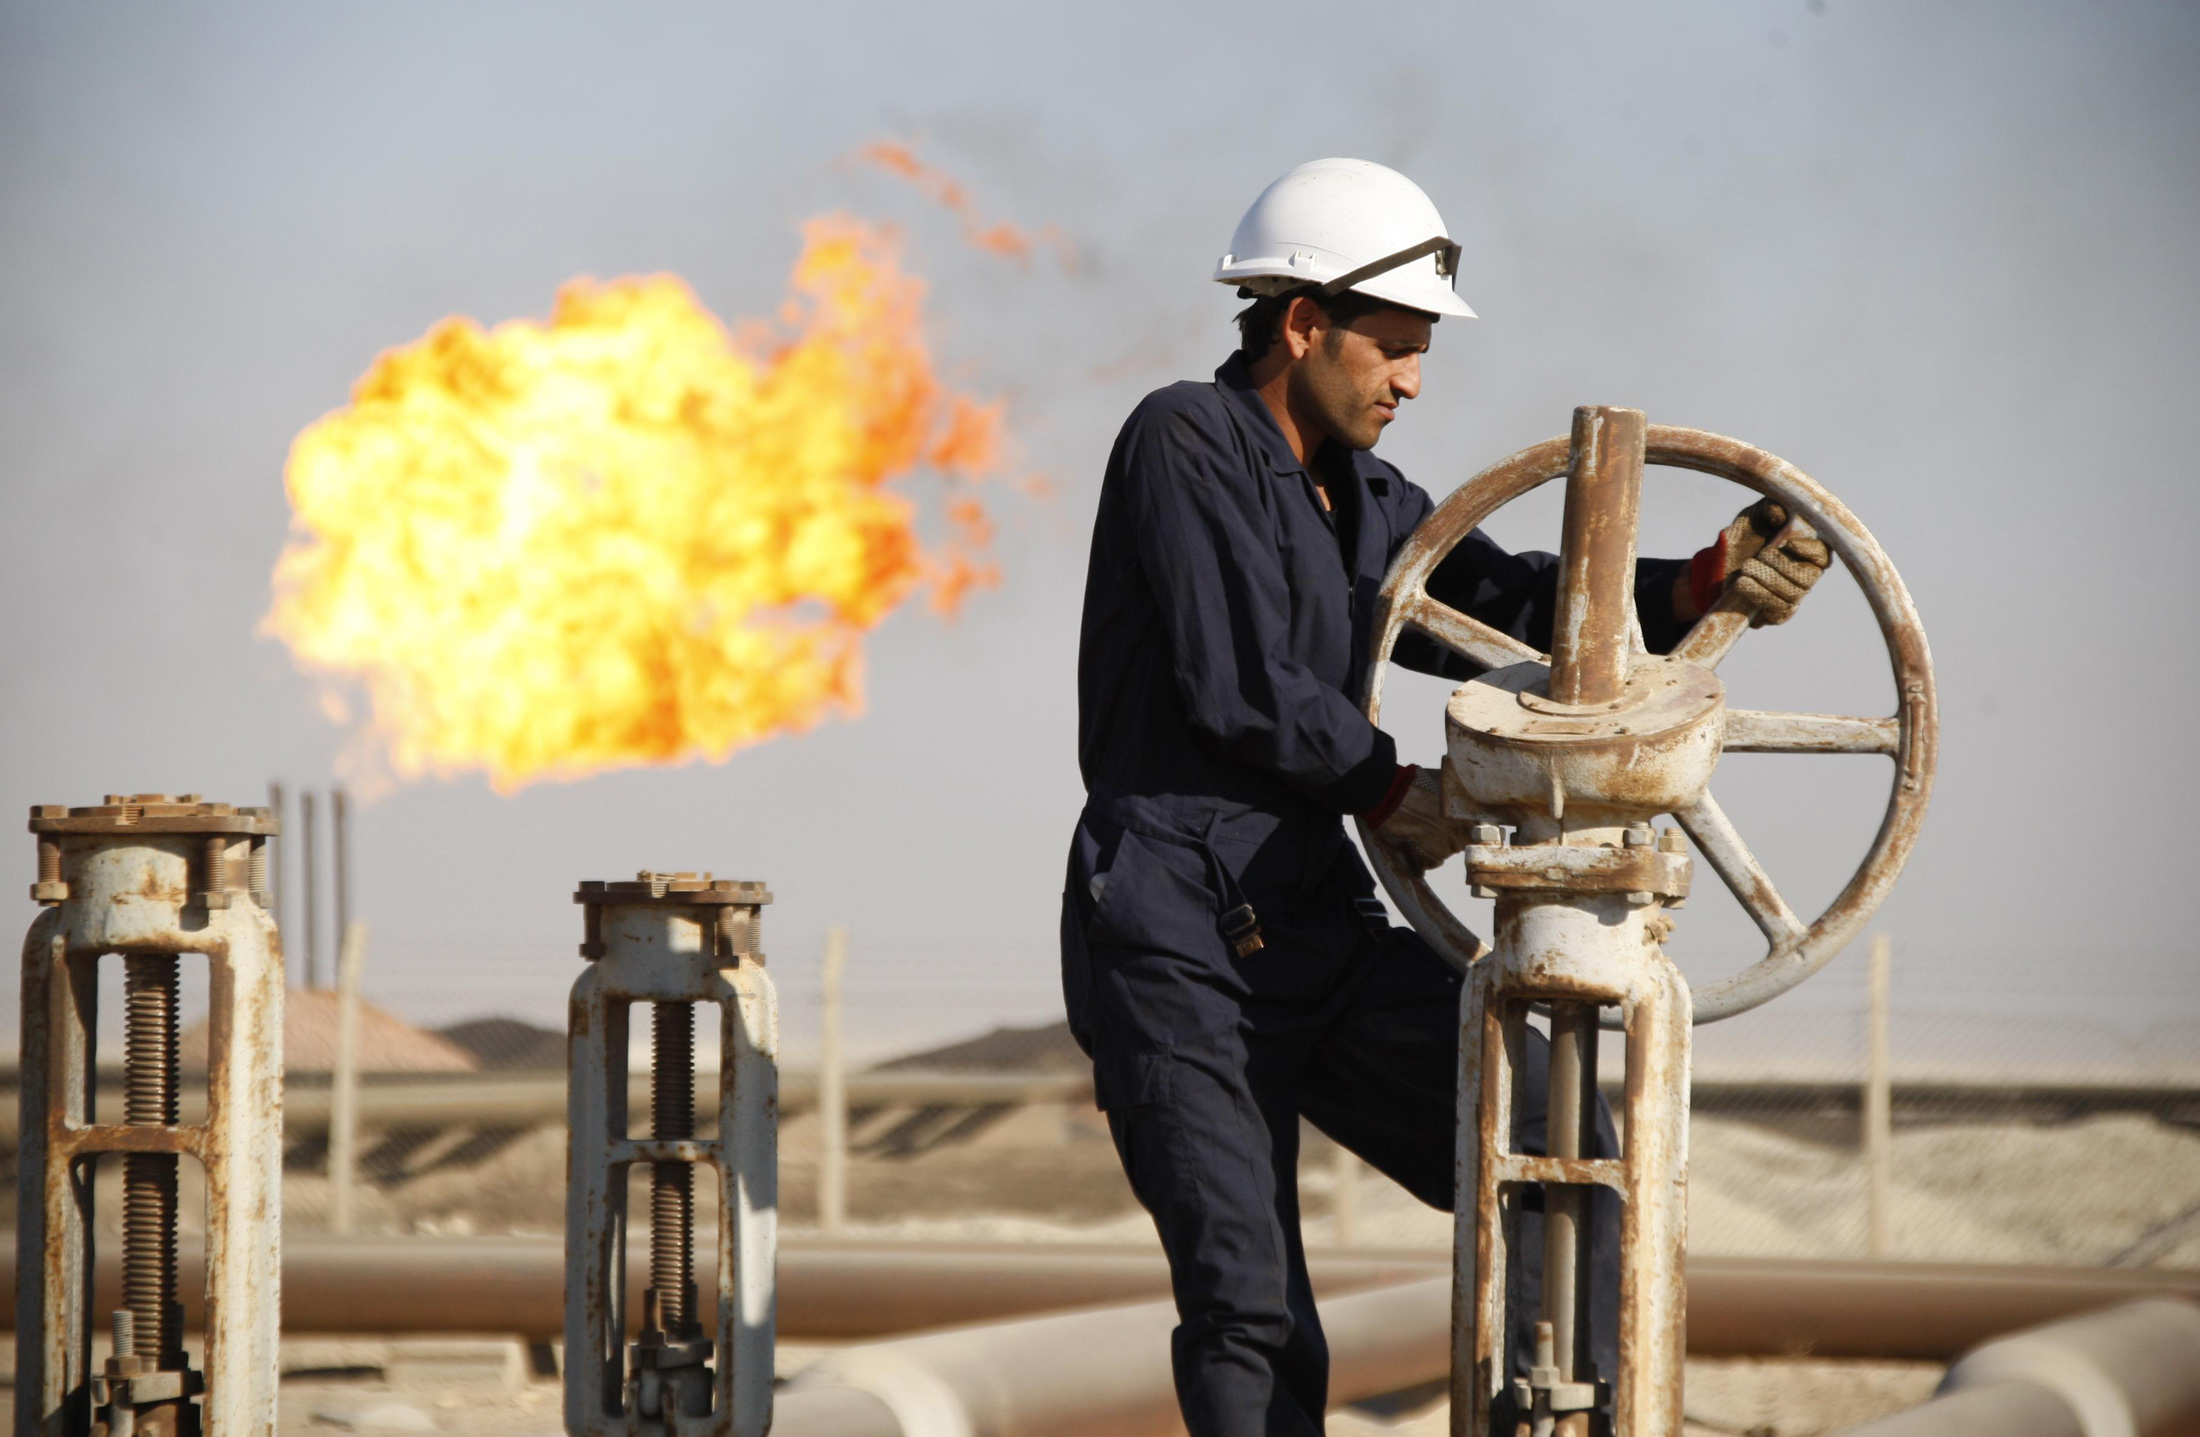 Αρχίζουν οι έρευνες για πετρέλαιο και φυσικό αέριο σε Νότια Κρήτη – Ιόνιο